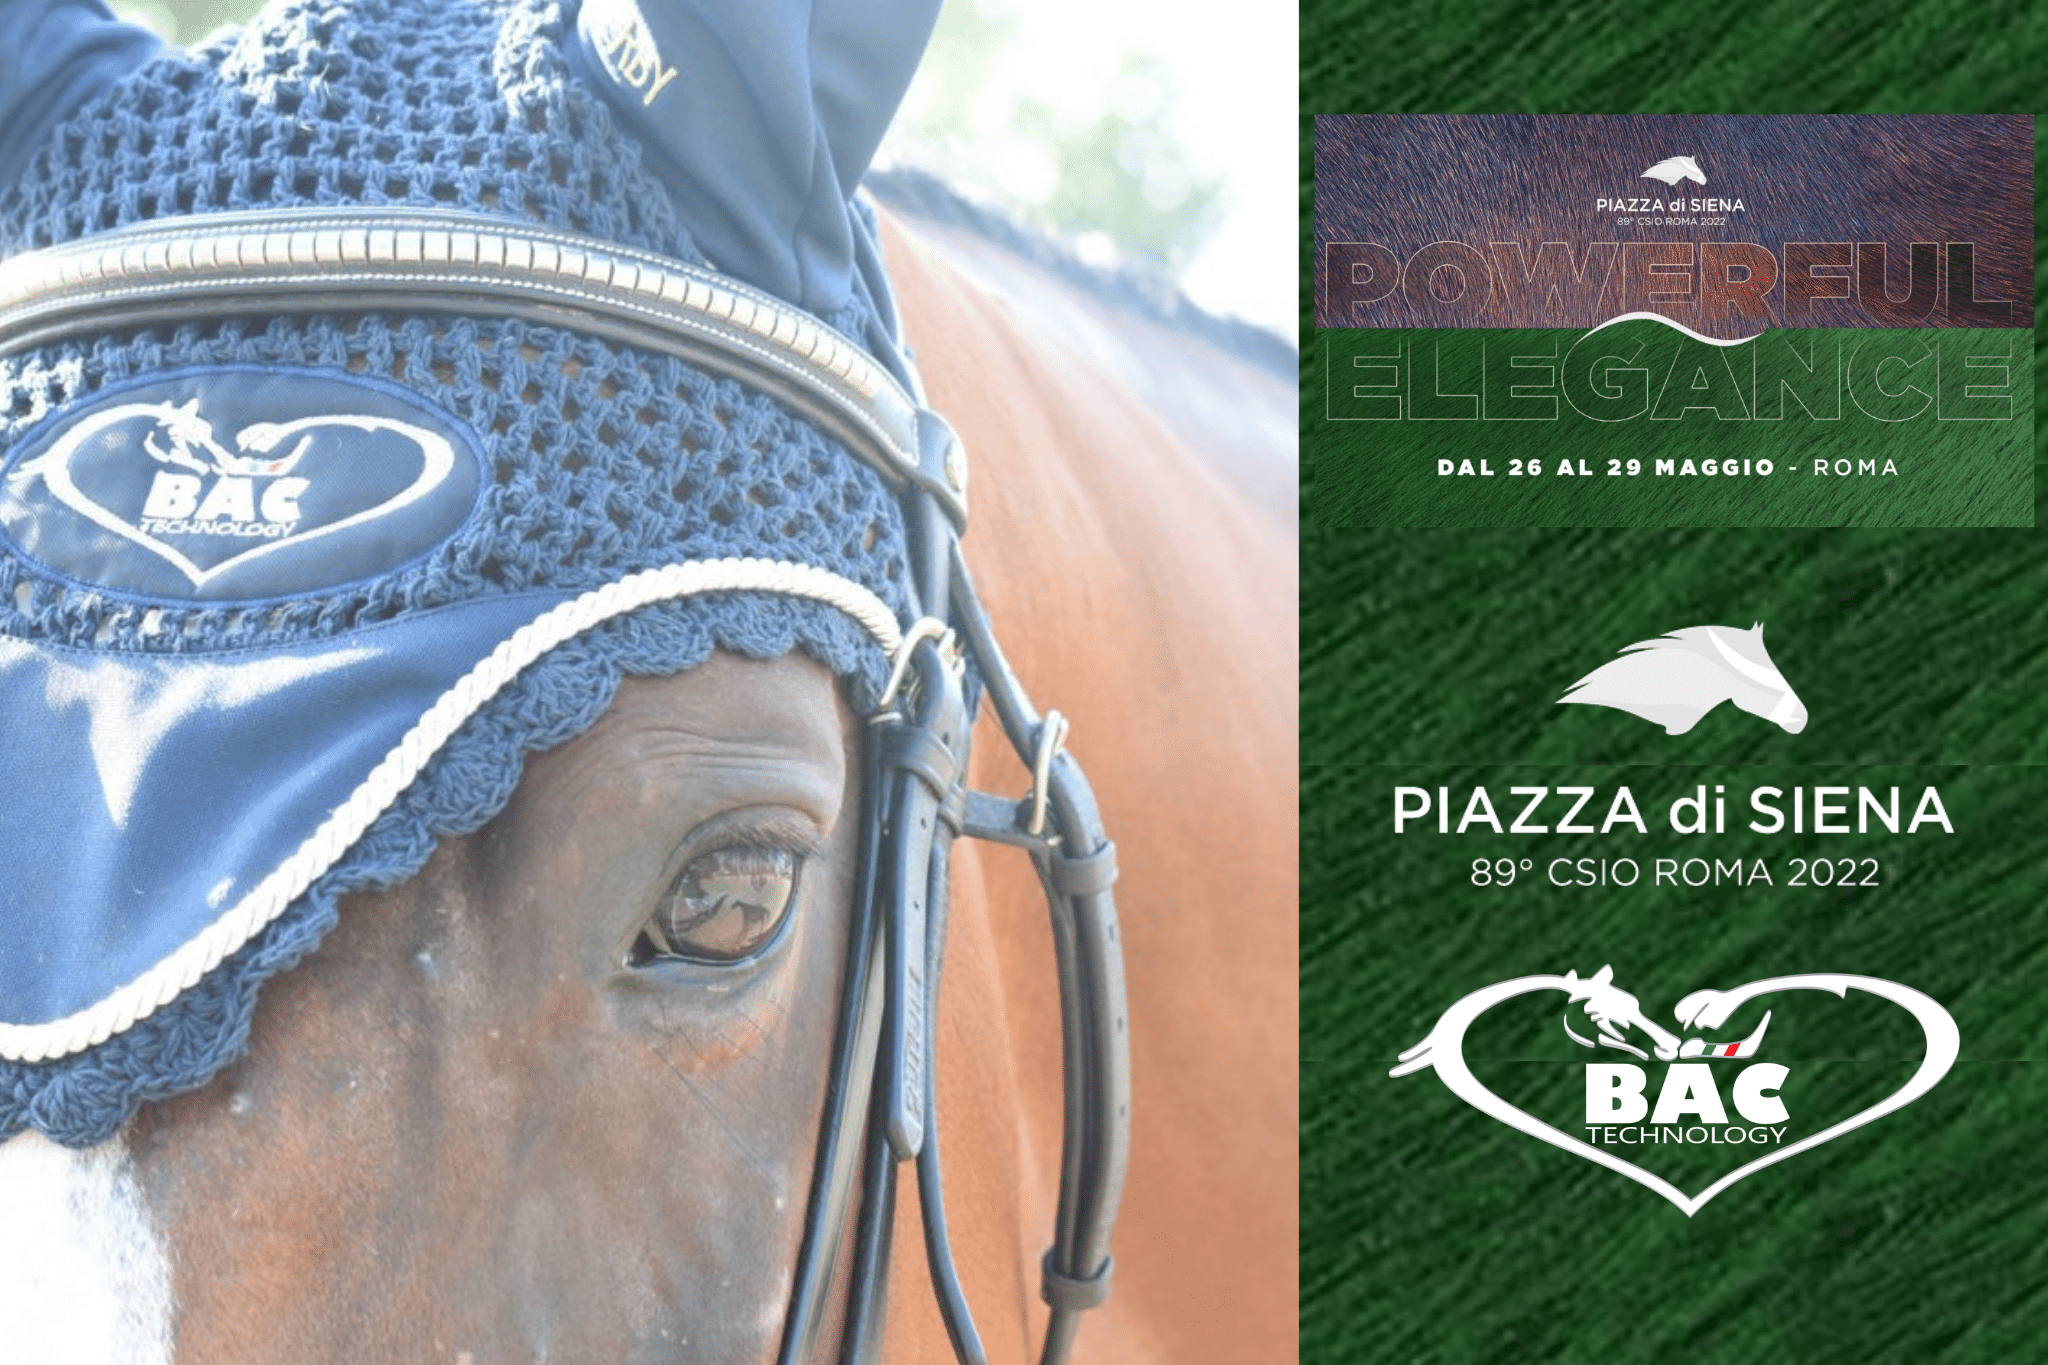 BAC Technology a Piazza di Siena 2022 con il Physio Point e i terapisti per i cavalli